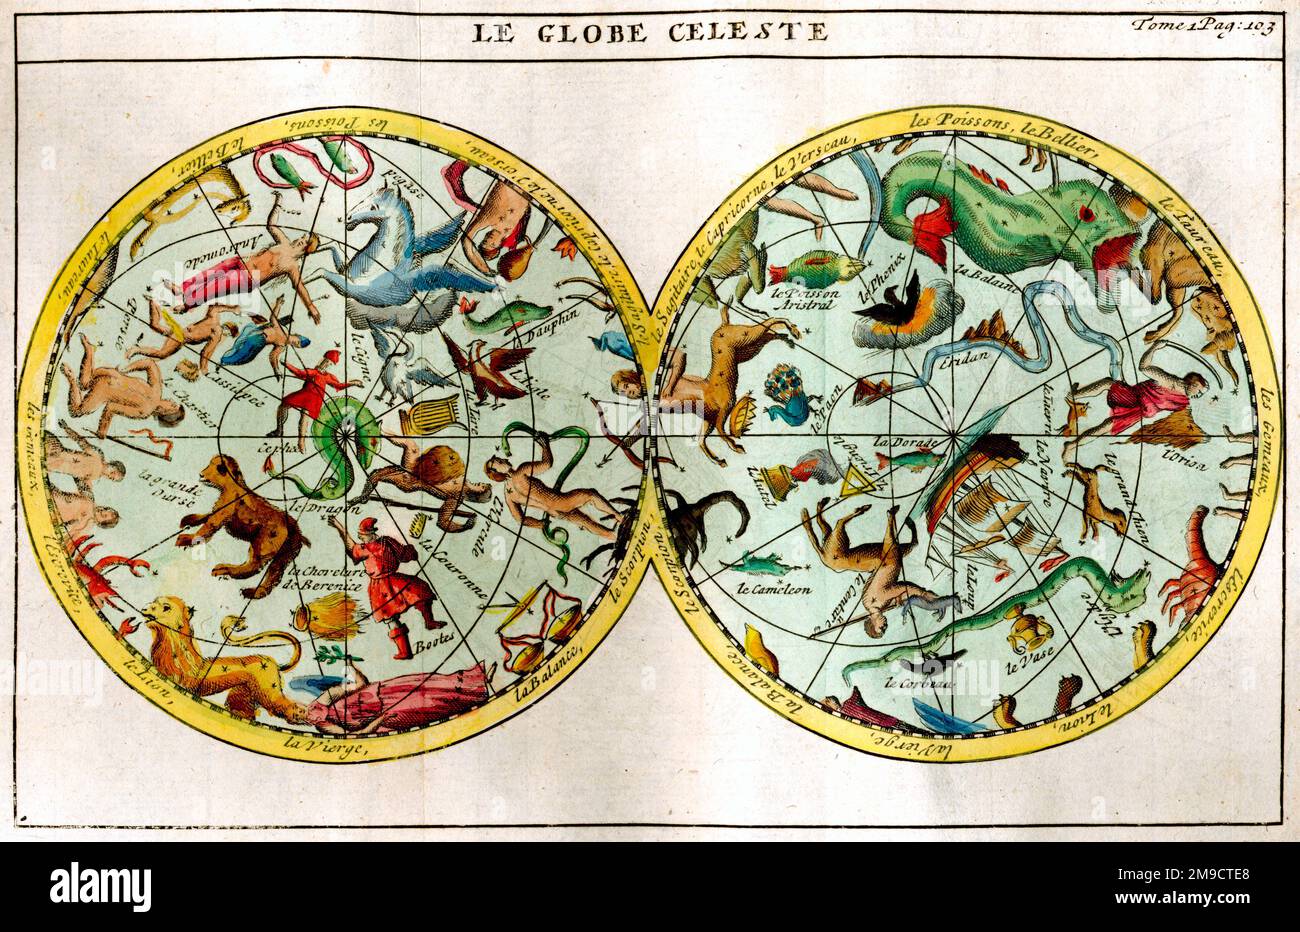 Globe Celeste - carte des étoiles et des constellations dans le ciel Banque D'Images